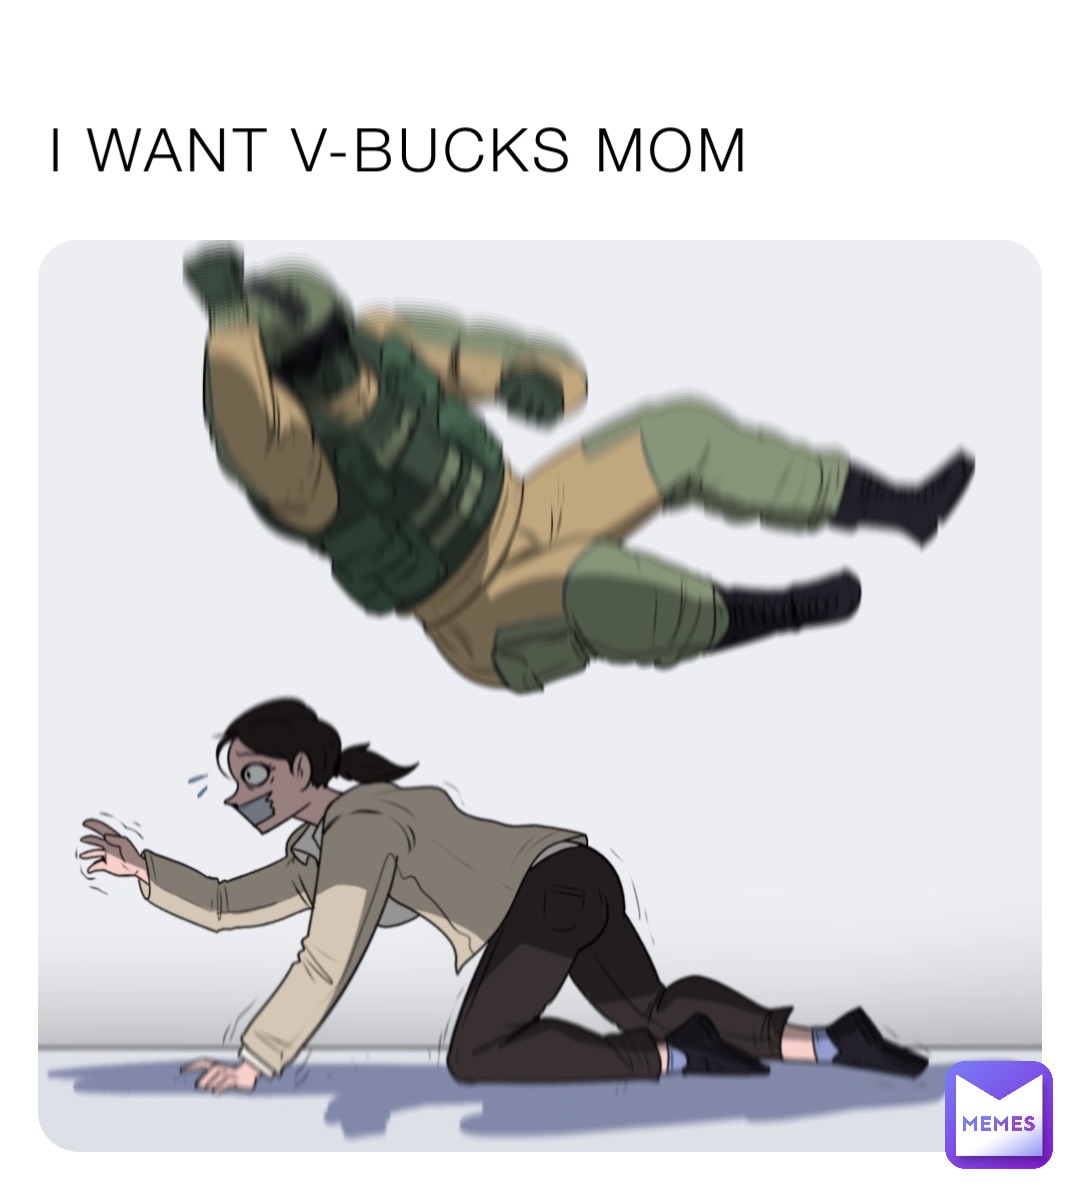 I WANT V-BUCKS MOM